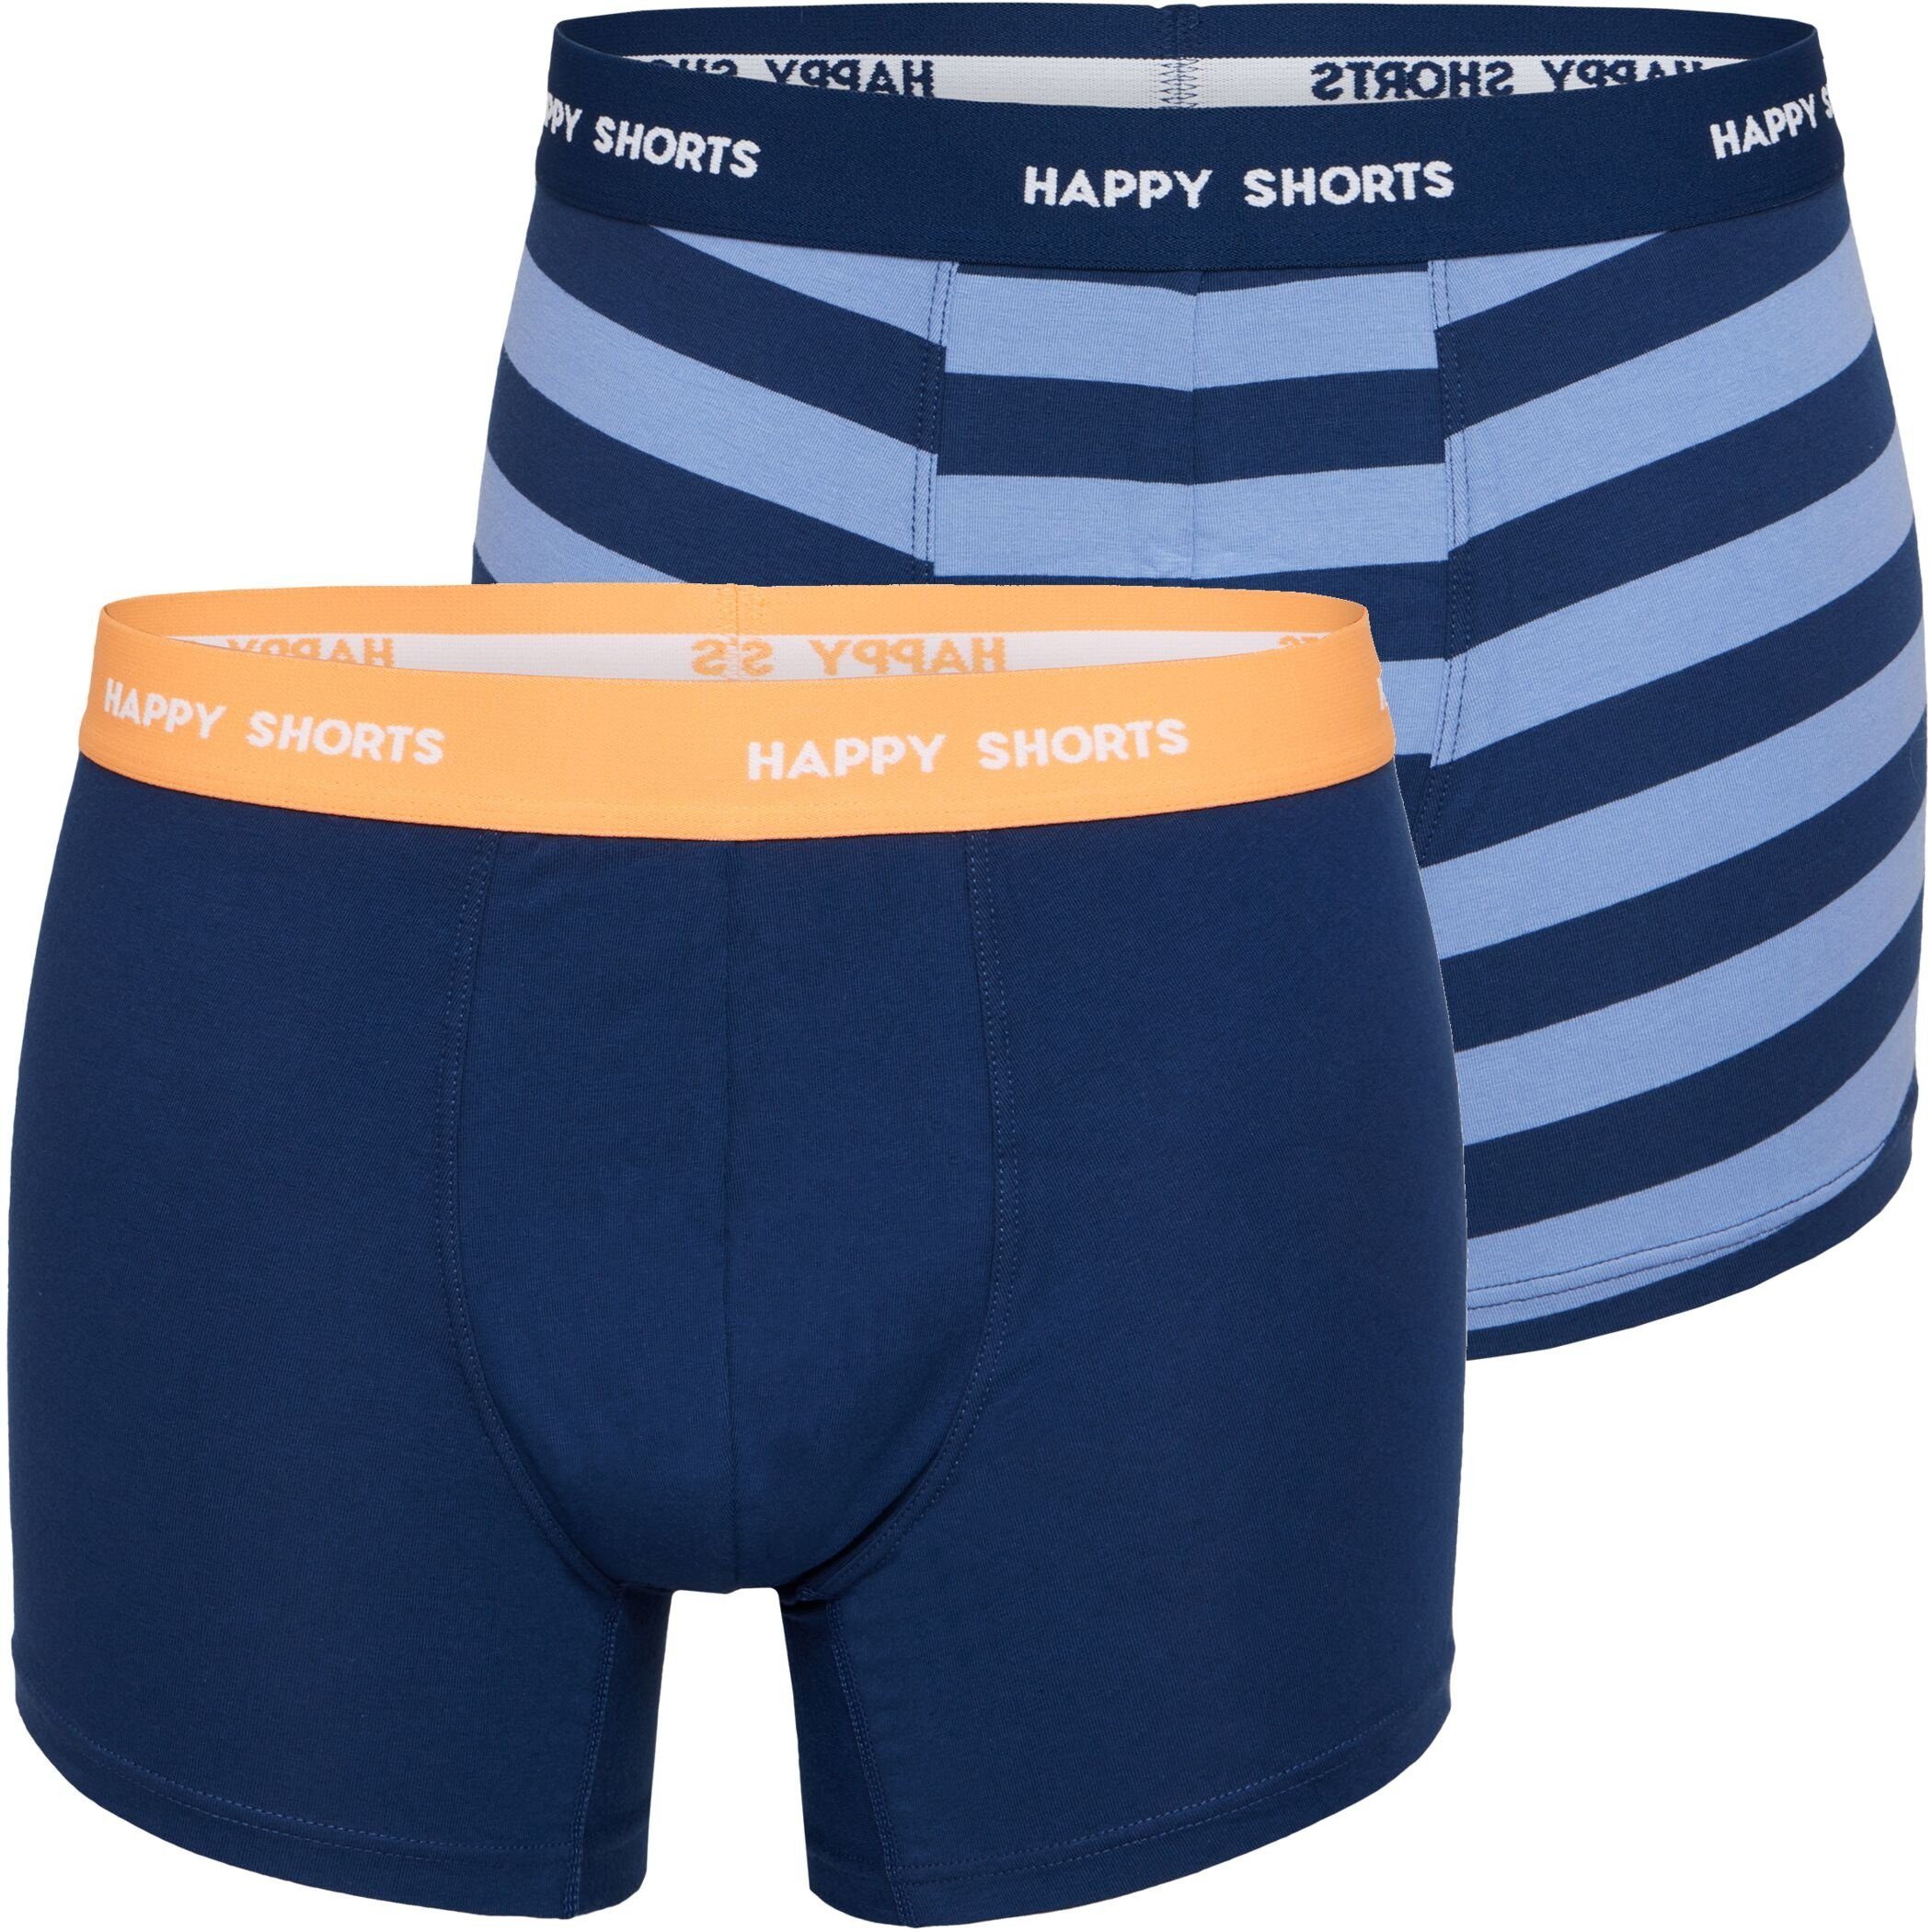 HAPPY SHORTS Trunk 2 Happy Shorts Jersey Trunk Herren Boxershorts Pant Blau Streifen (1-St)